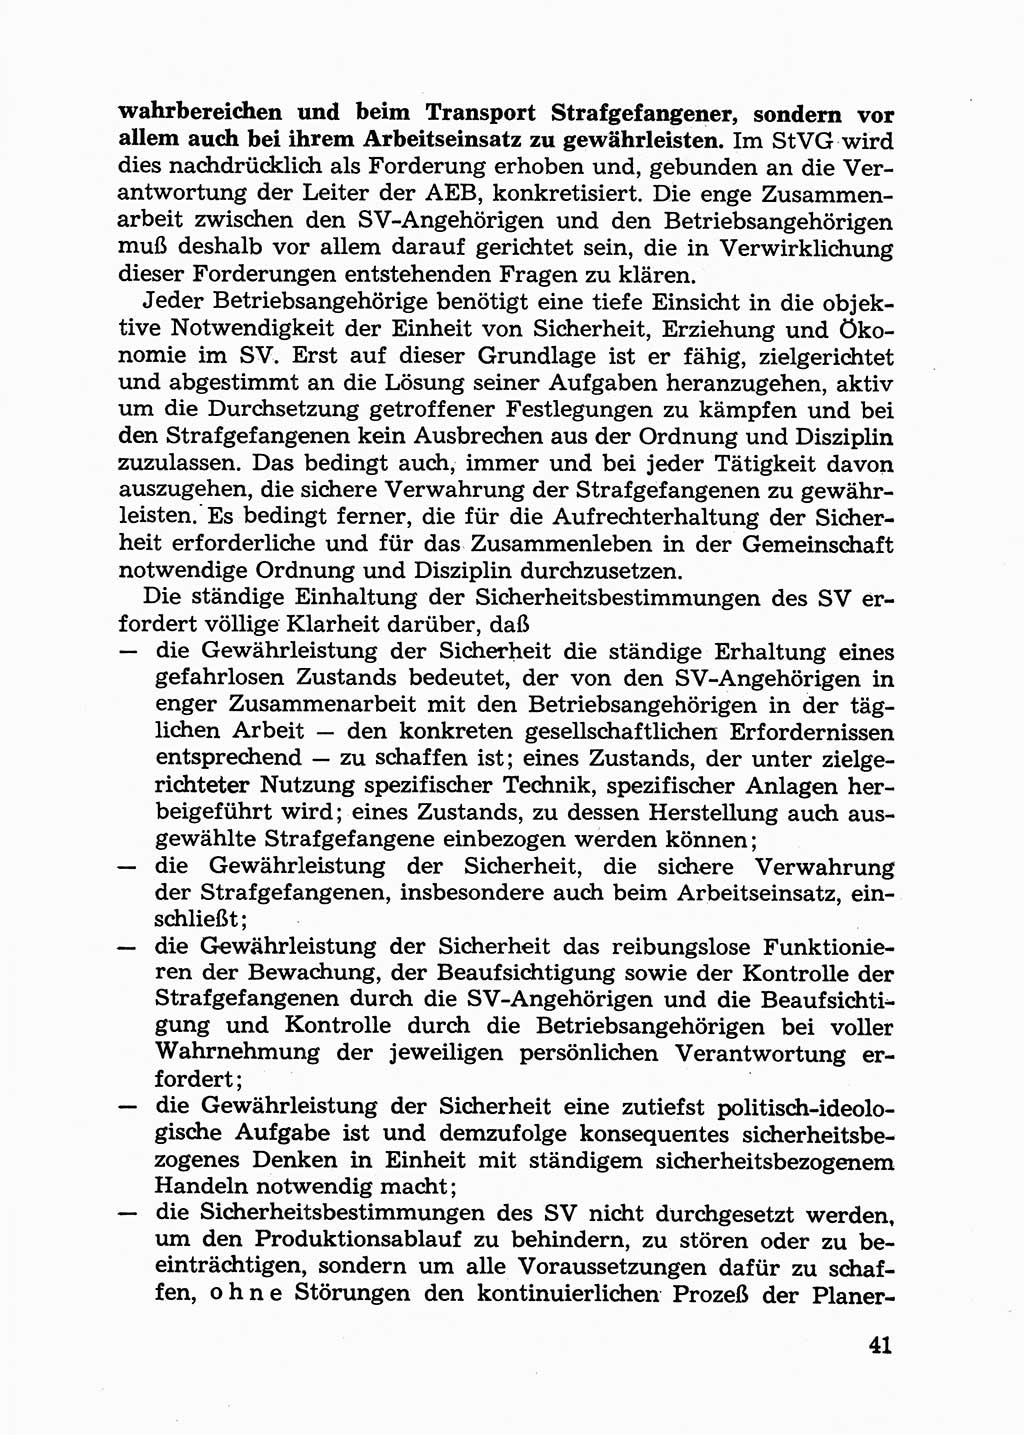 Handbuch für Betriebsangehörige, Abteilung Strafvollzug (SV) [Ministerium des Innern (MdI) Deutsche Demokratische Republik (DDR)] 1981, Seite 41 (Hb. BA Abt. SV MdI DDR 1981, S. 41)